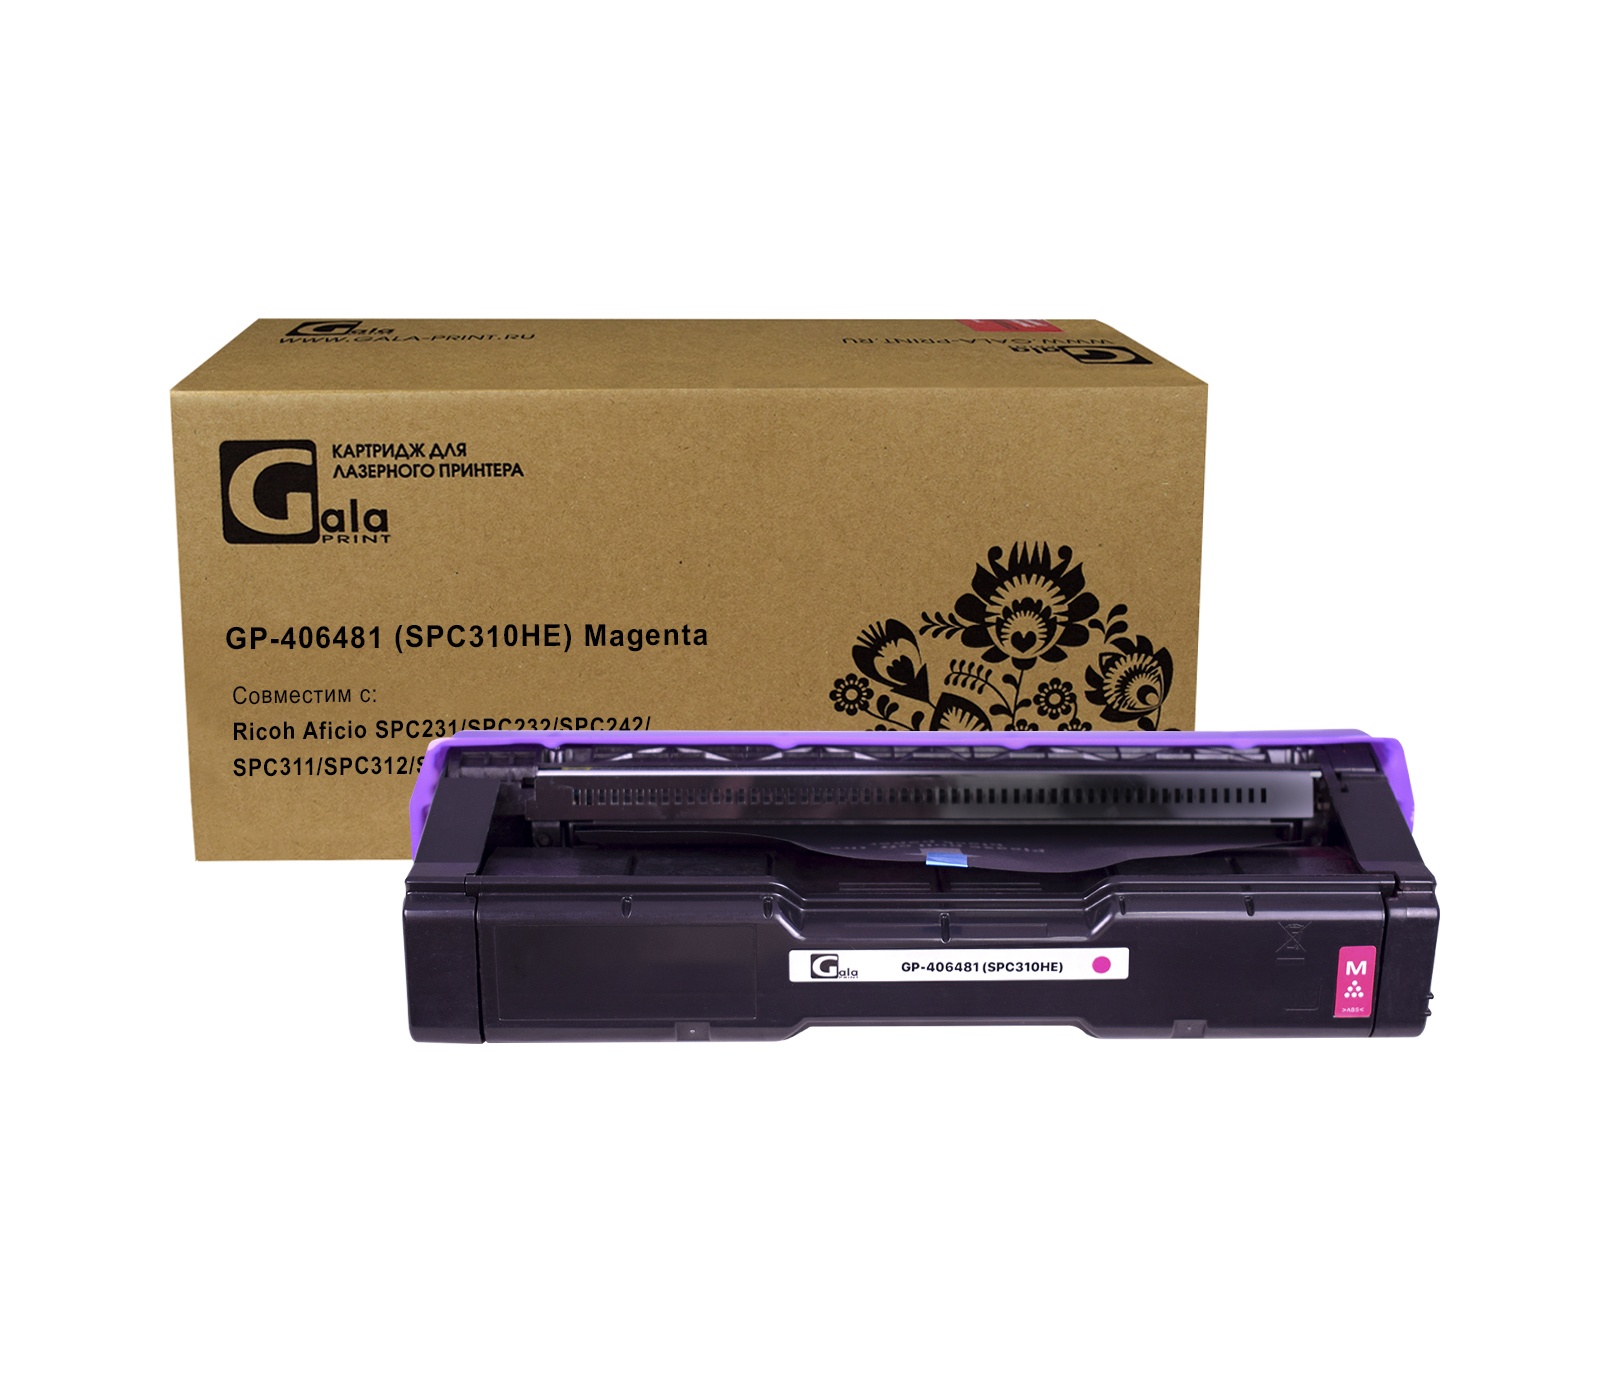 Картридж GP-406481 (SPC310HE) для принтеров Ricoh Aficio SPC231/SPC232/SPC242/SPC311/SPC312/SPC320 Magenta 6000 копий GalaPrint